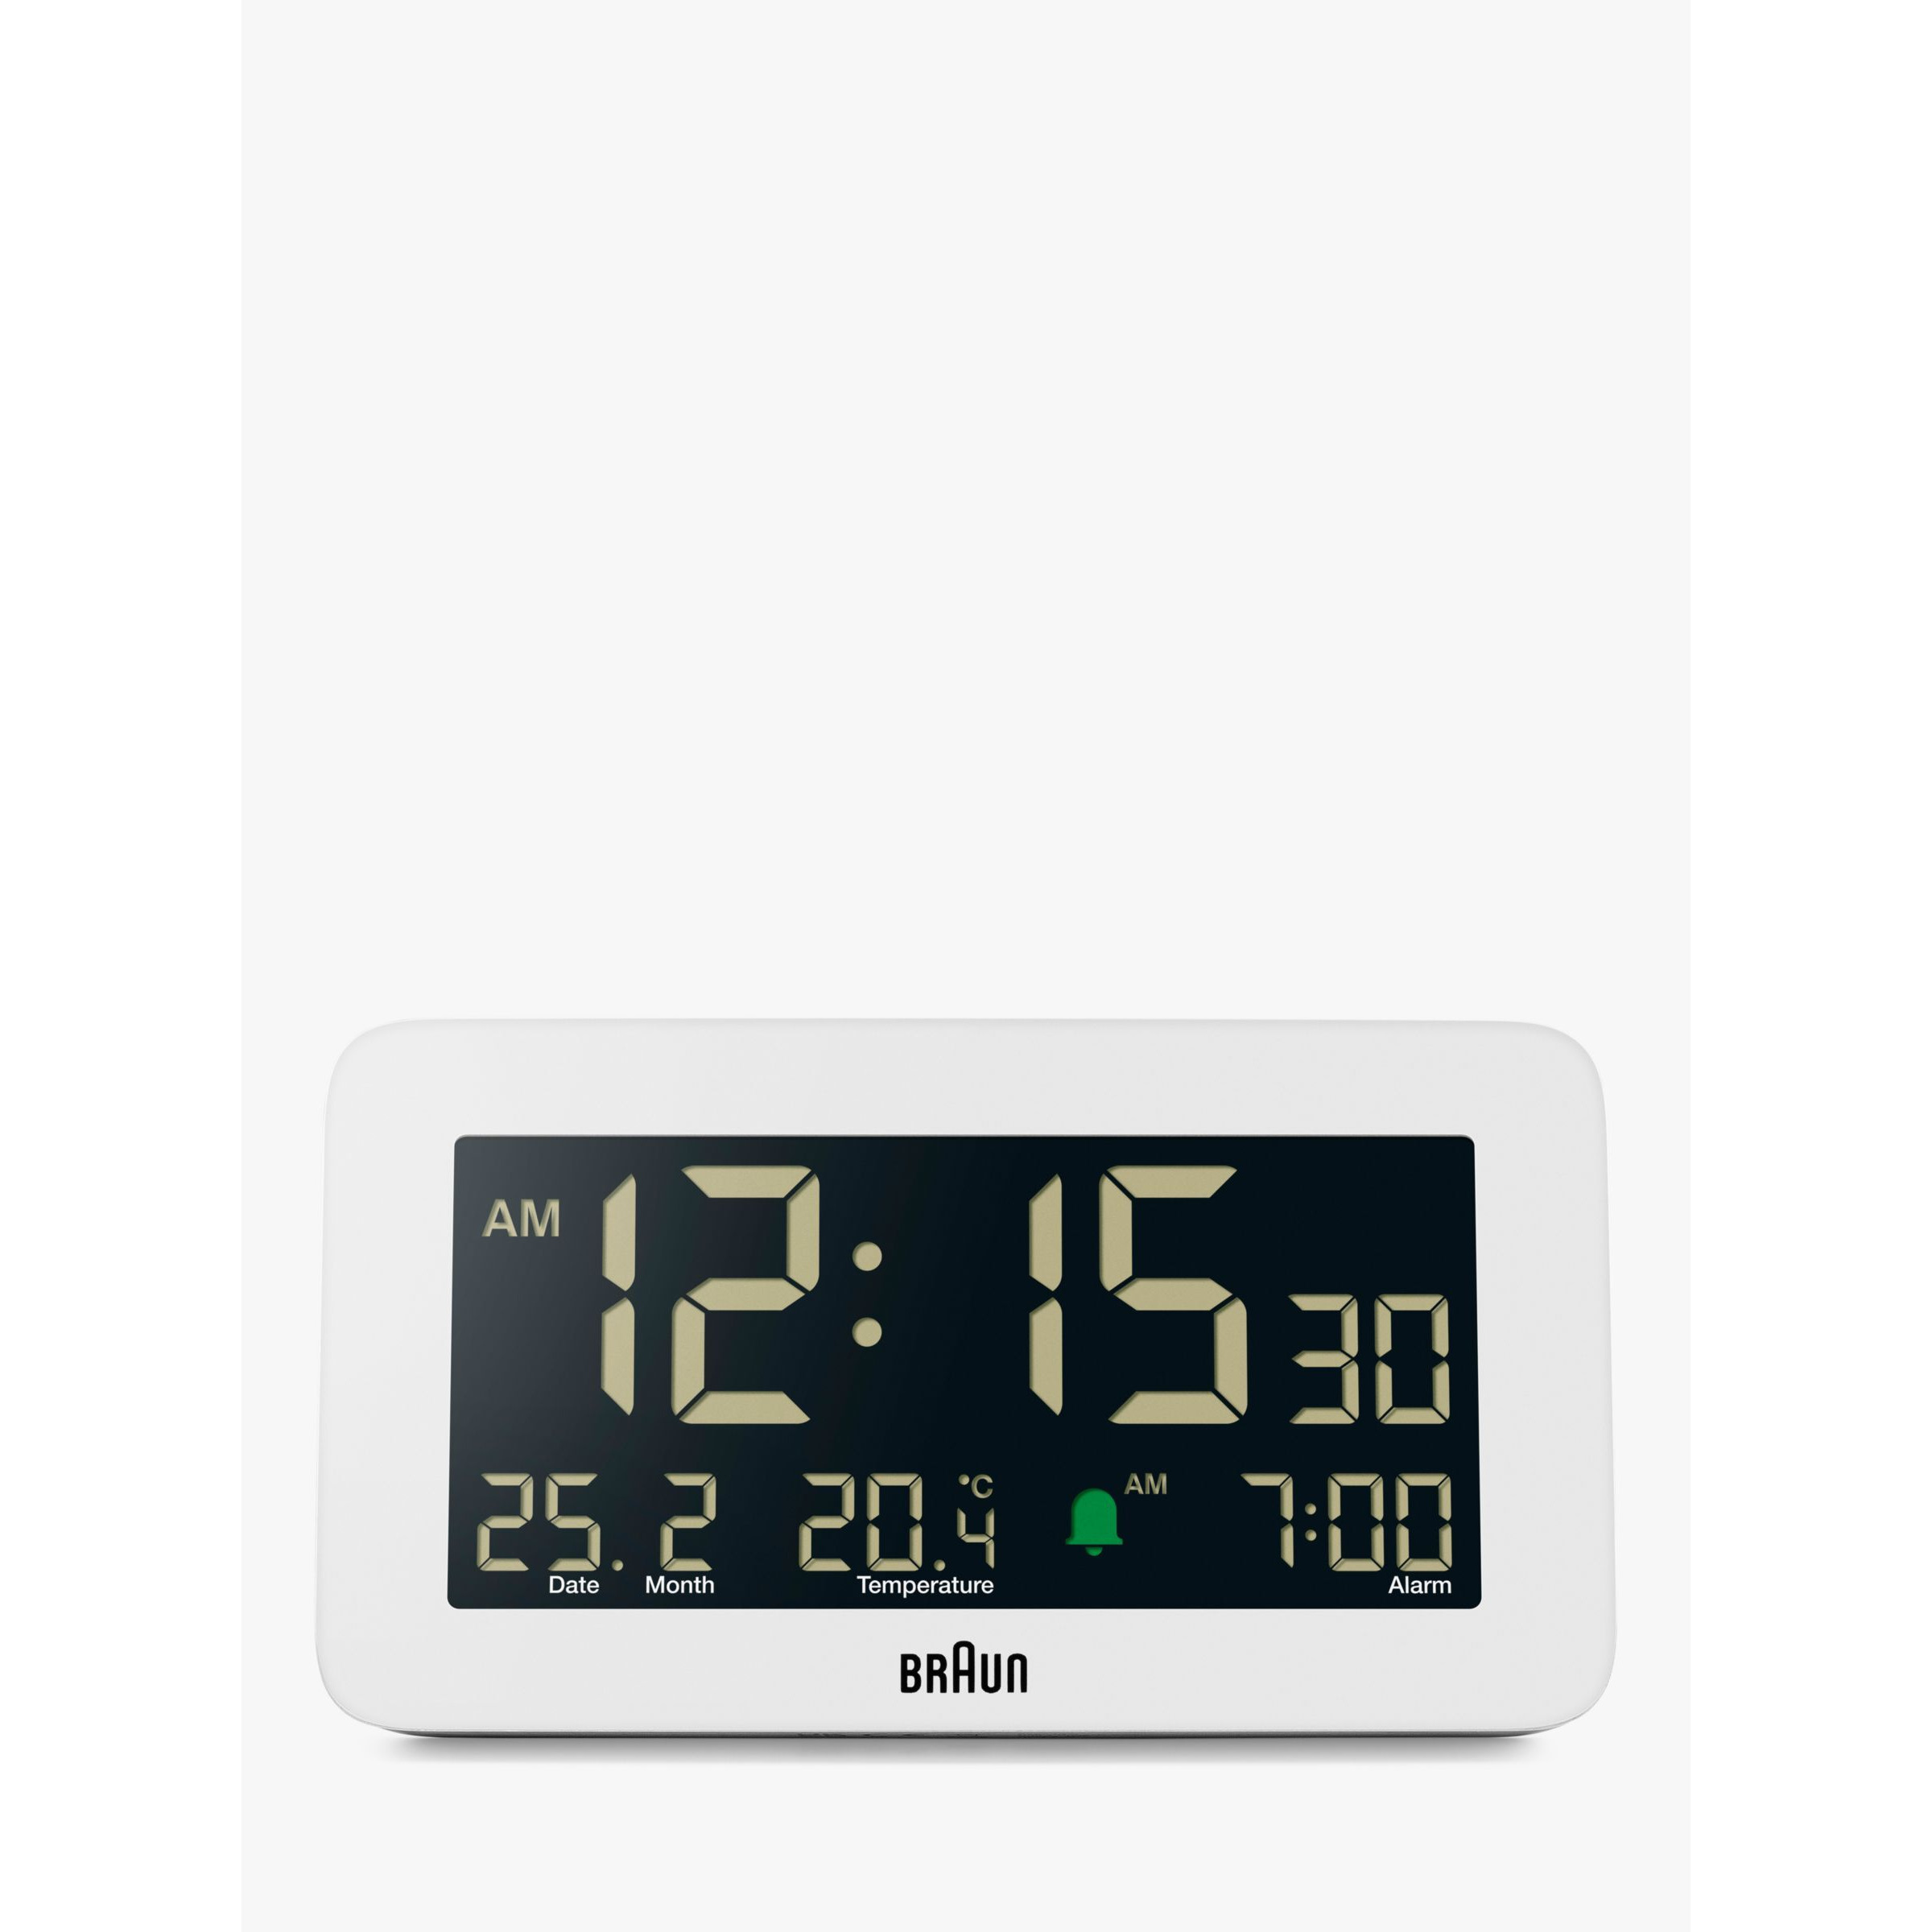 Braun BC10 Temperature & Date Digital Alarm Clock, White - image 1